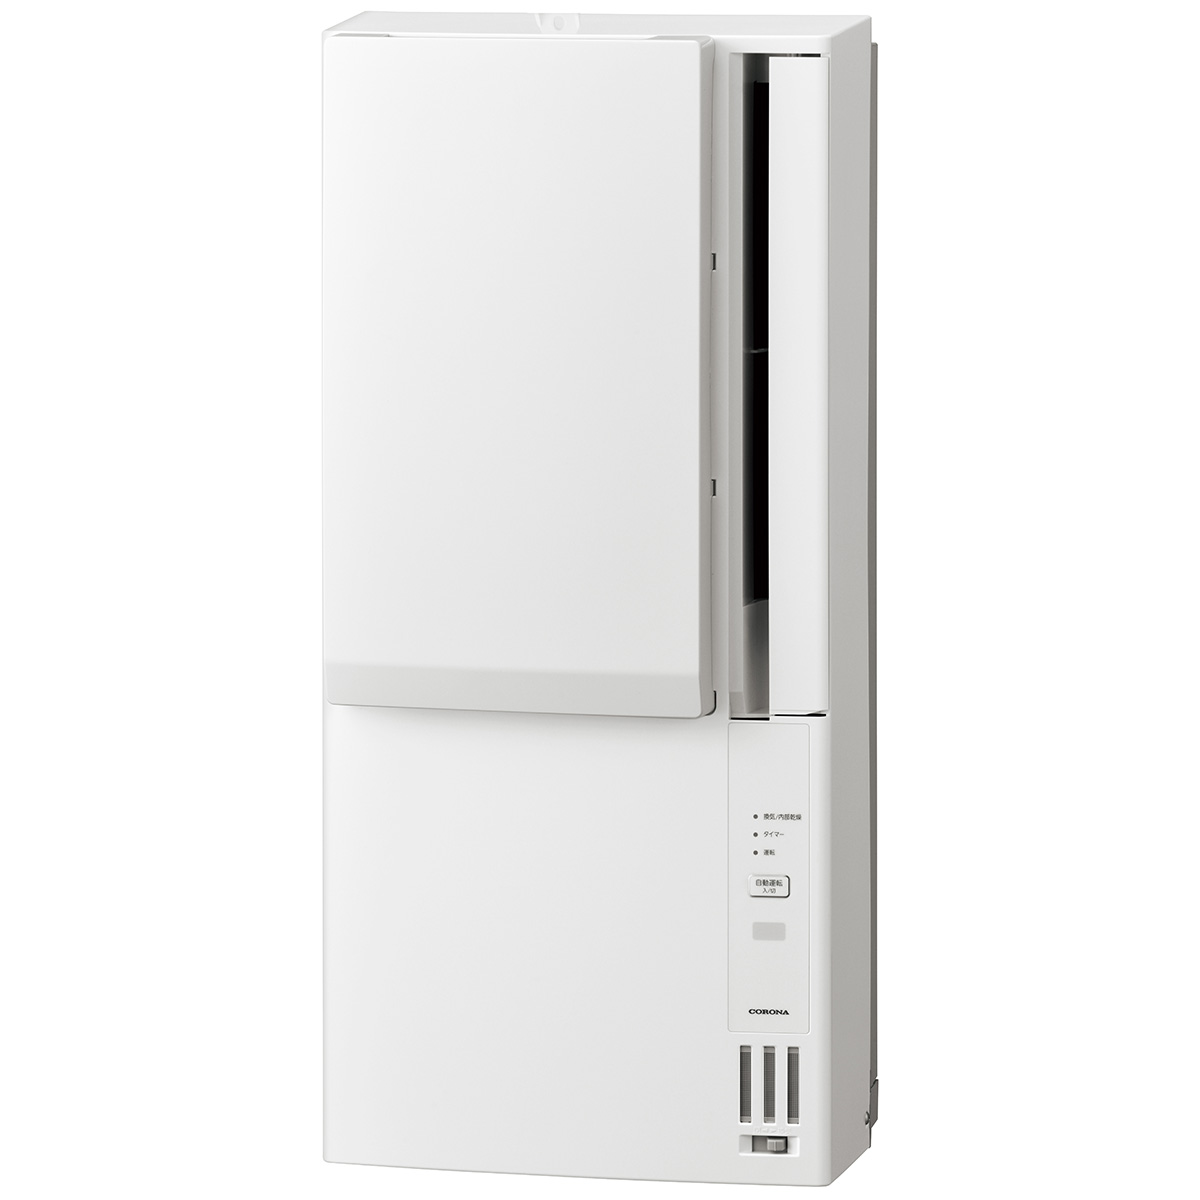 ウインドエアコン(窓用エアコン) 冷暖房兼用 ReLaLa おもに4.5-7畳用(CWH-A1824Rの旧型番)